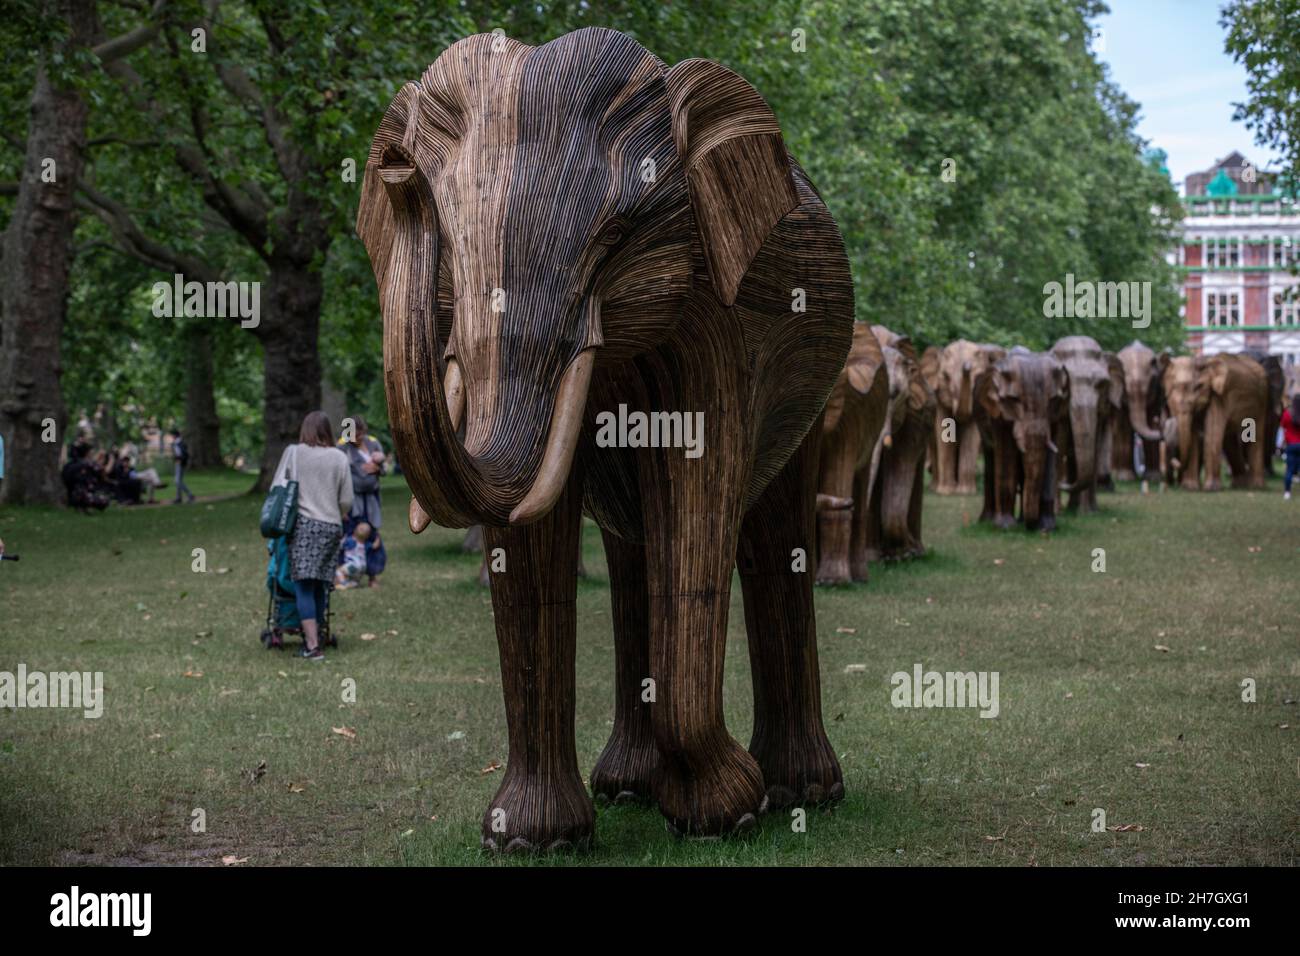 Exposición de arte ambiental de coexistencia con 100 elefantes de lantana de tamaño natural en Green Park, recaudó más de 3m libras para proyectos de vida silvestre y humana, Londres. Foto de stock